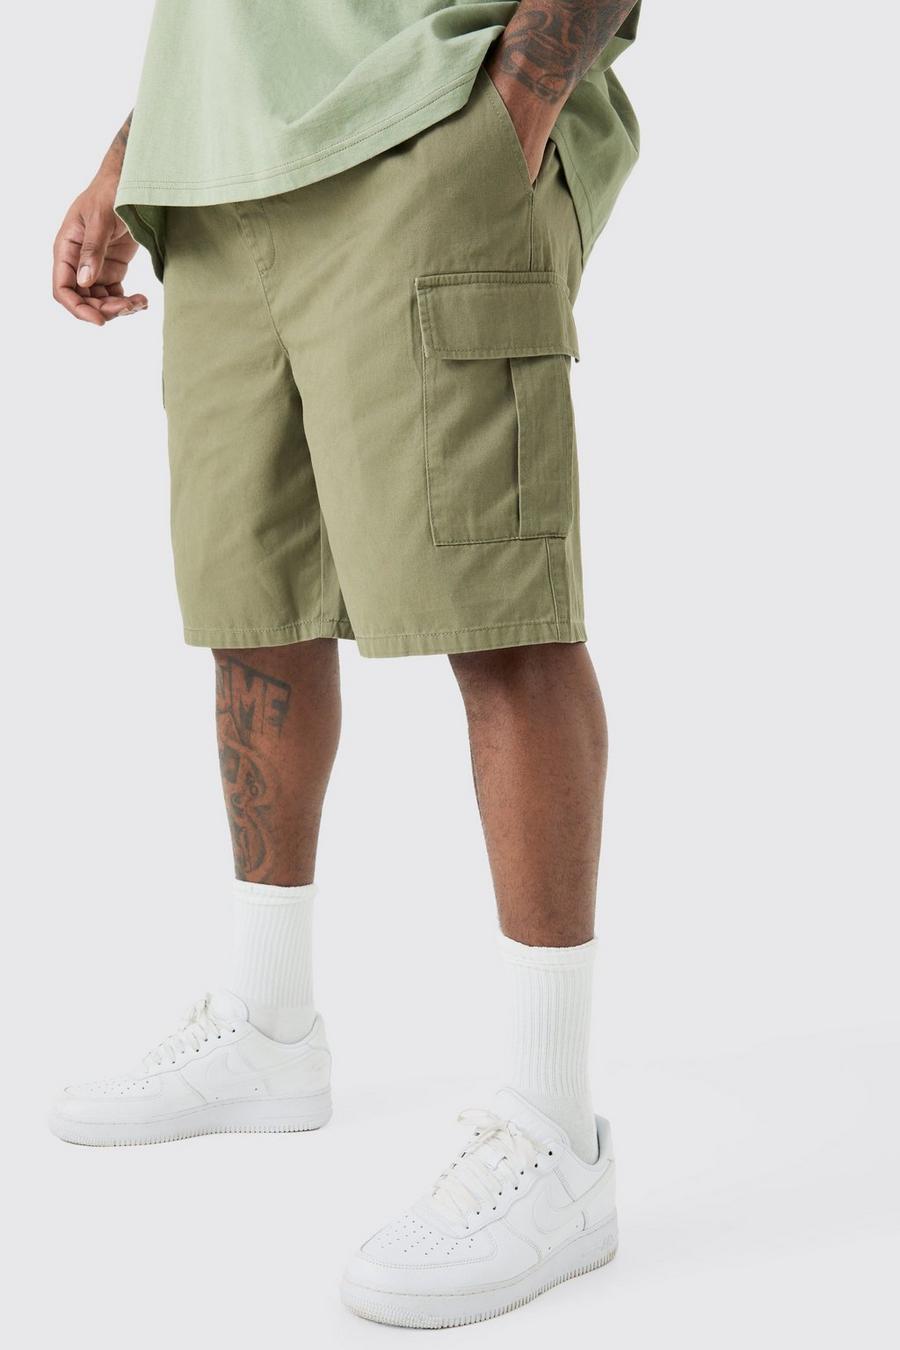 Pantalones cortos Plus cargo holgados con cintura elástica en color caqui, Khaki image number 1